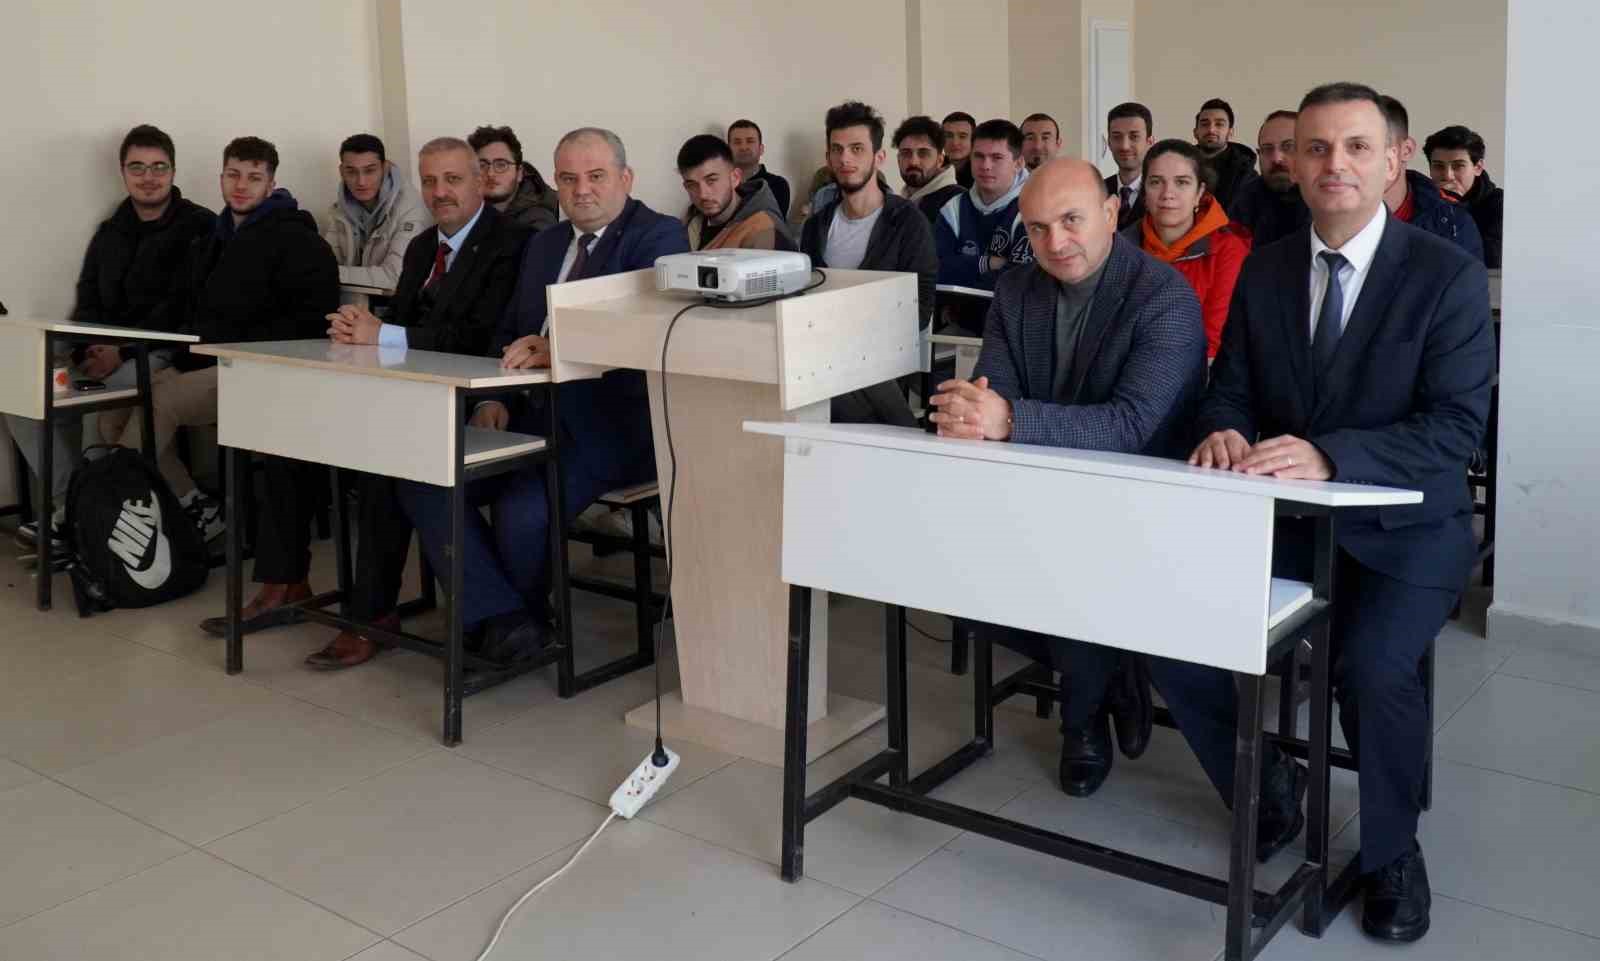 Başkan Oral, Altınova’da derse girerek ilçeyi tanıttı
